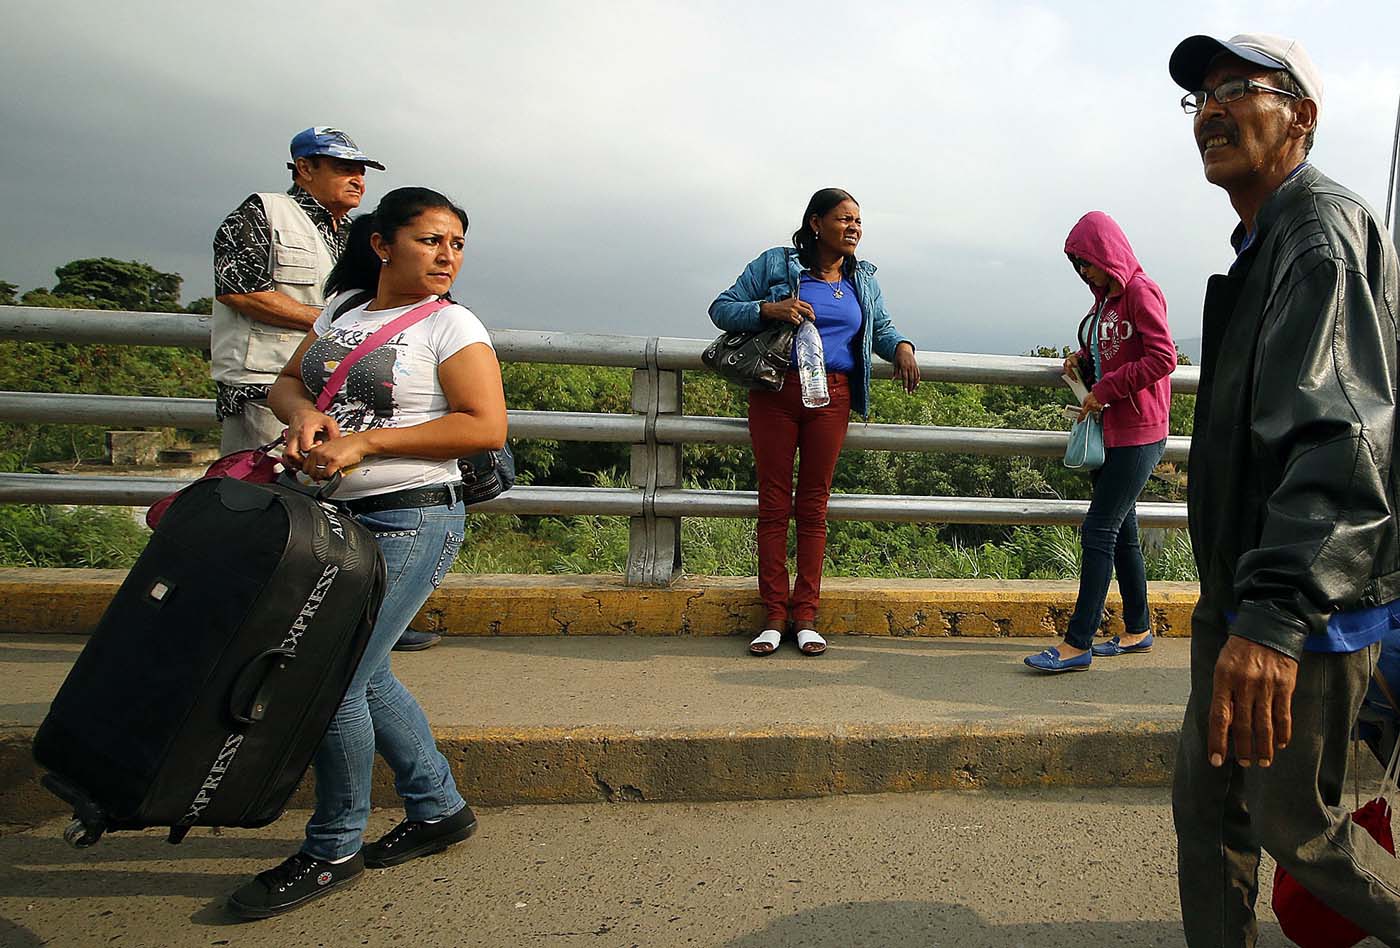 “Directo a Cúcuta y sin documentos”: La atractiva oferta para llegar a Colombia desde San Antonio del Táchira